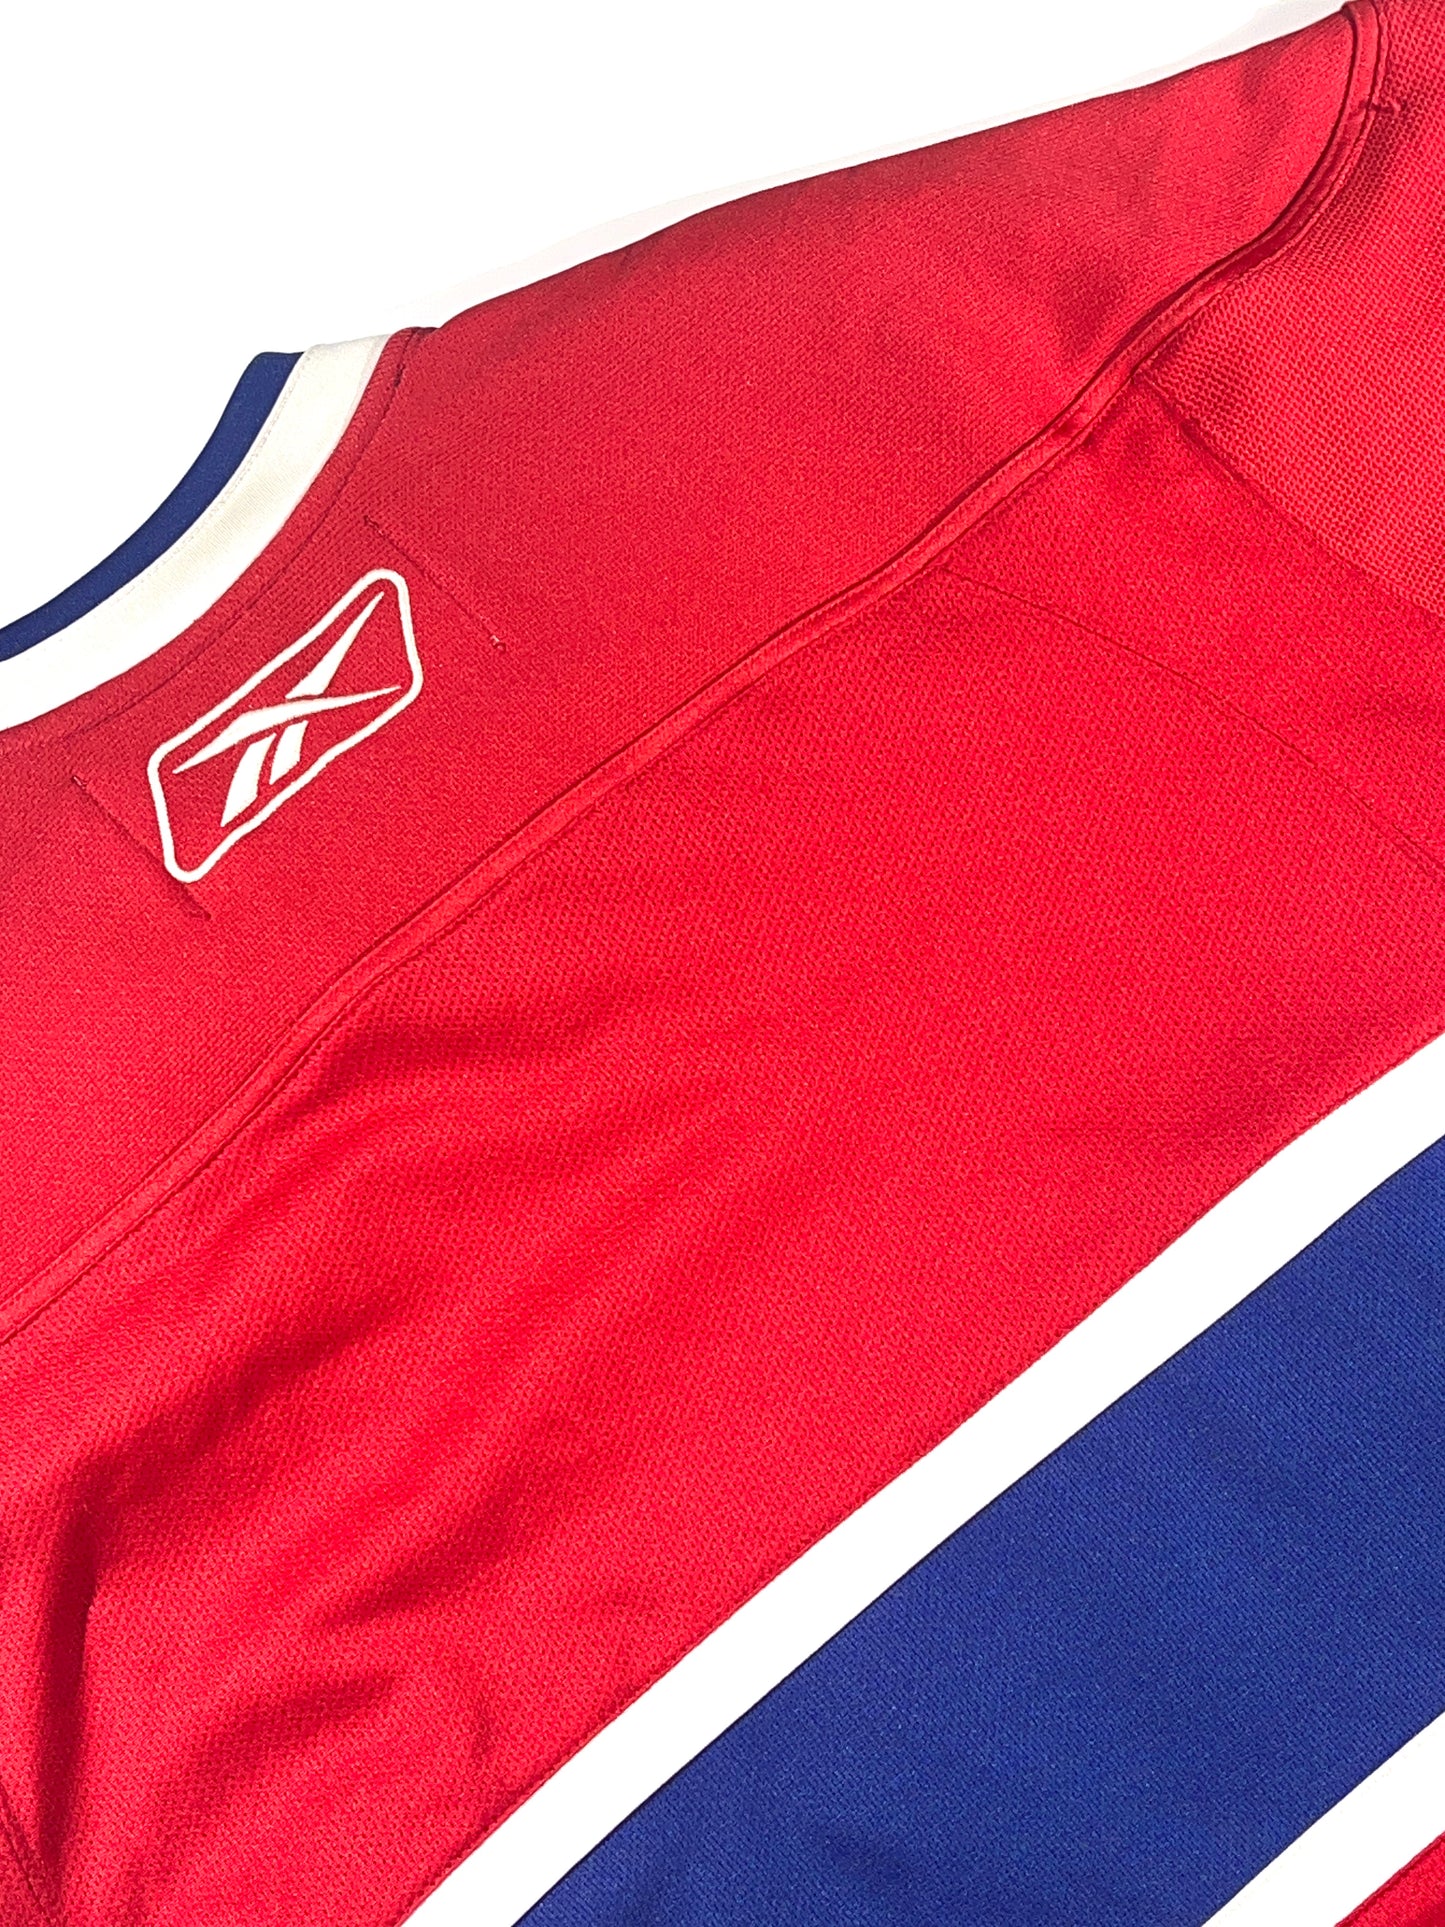 Vintage Montreal Canadiens Jersey NHL Top Reebok